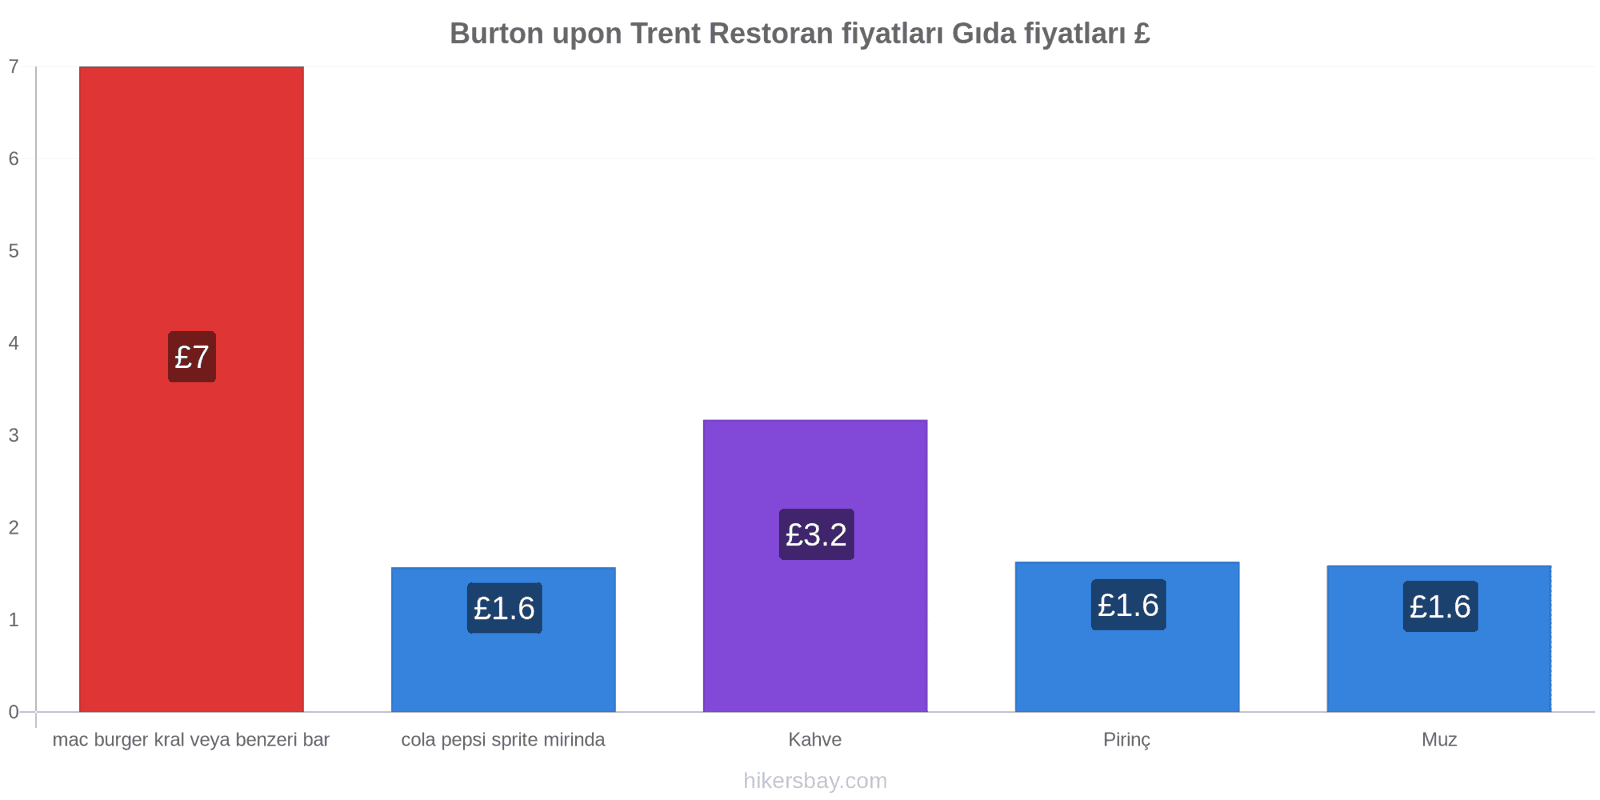 Burton upon Trent fiyat değişiklikleri hikersbay.com